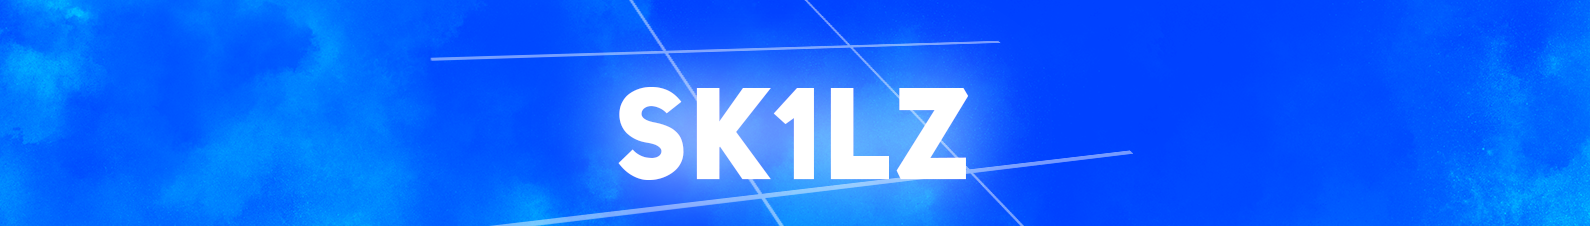 Banner de perfil de Sk1lz -_-